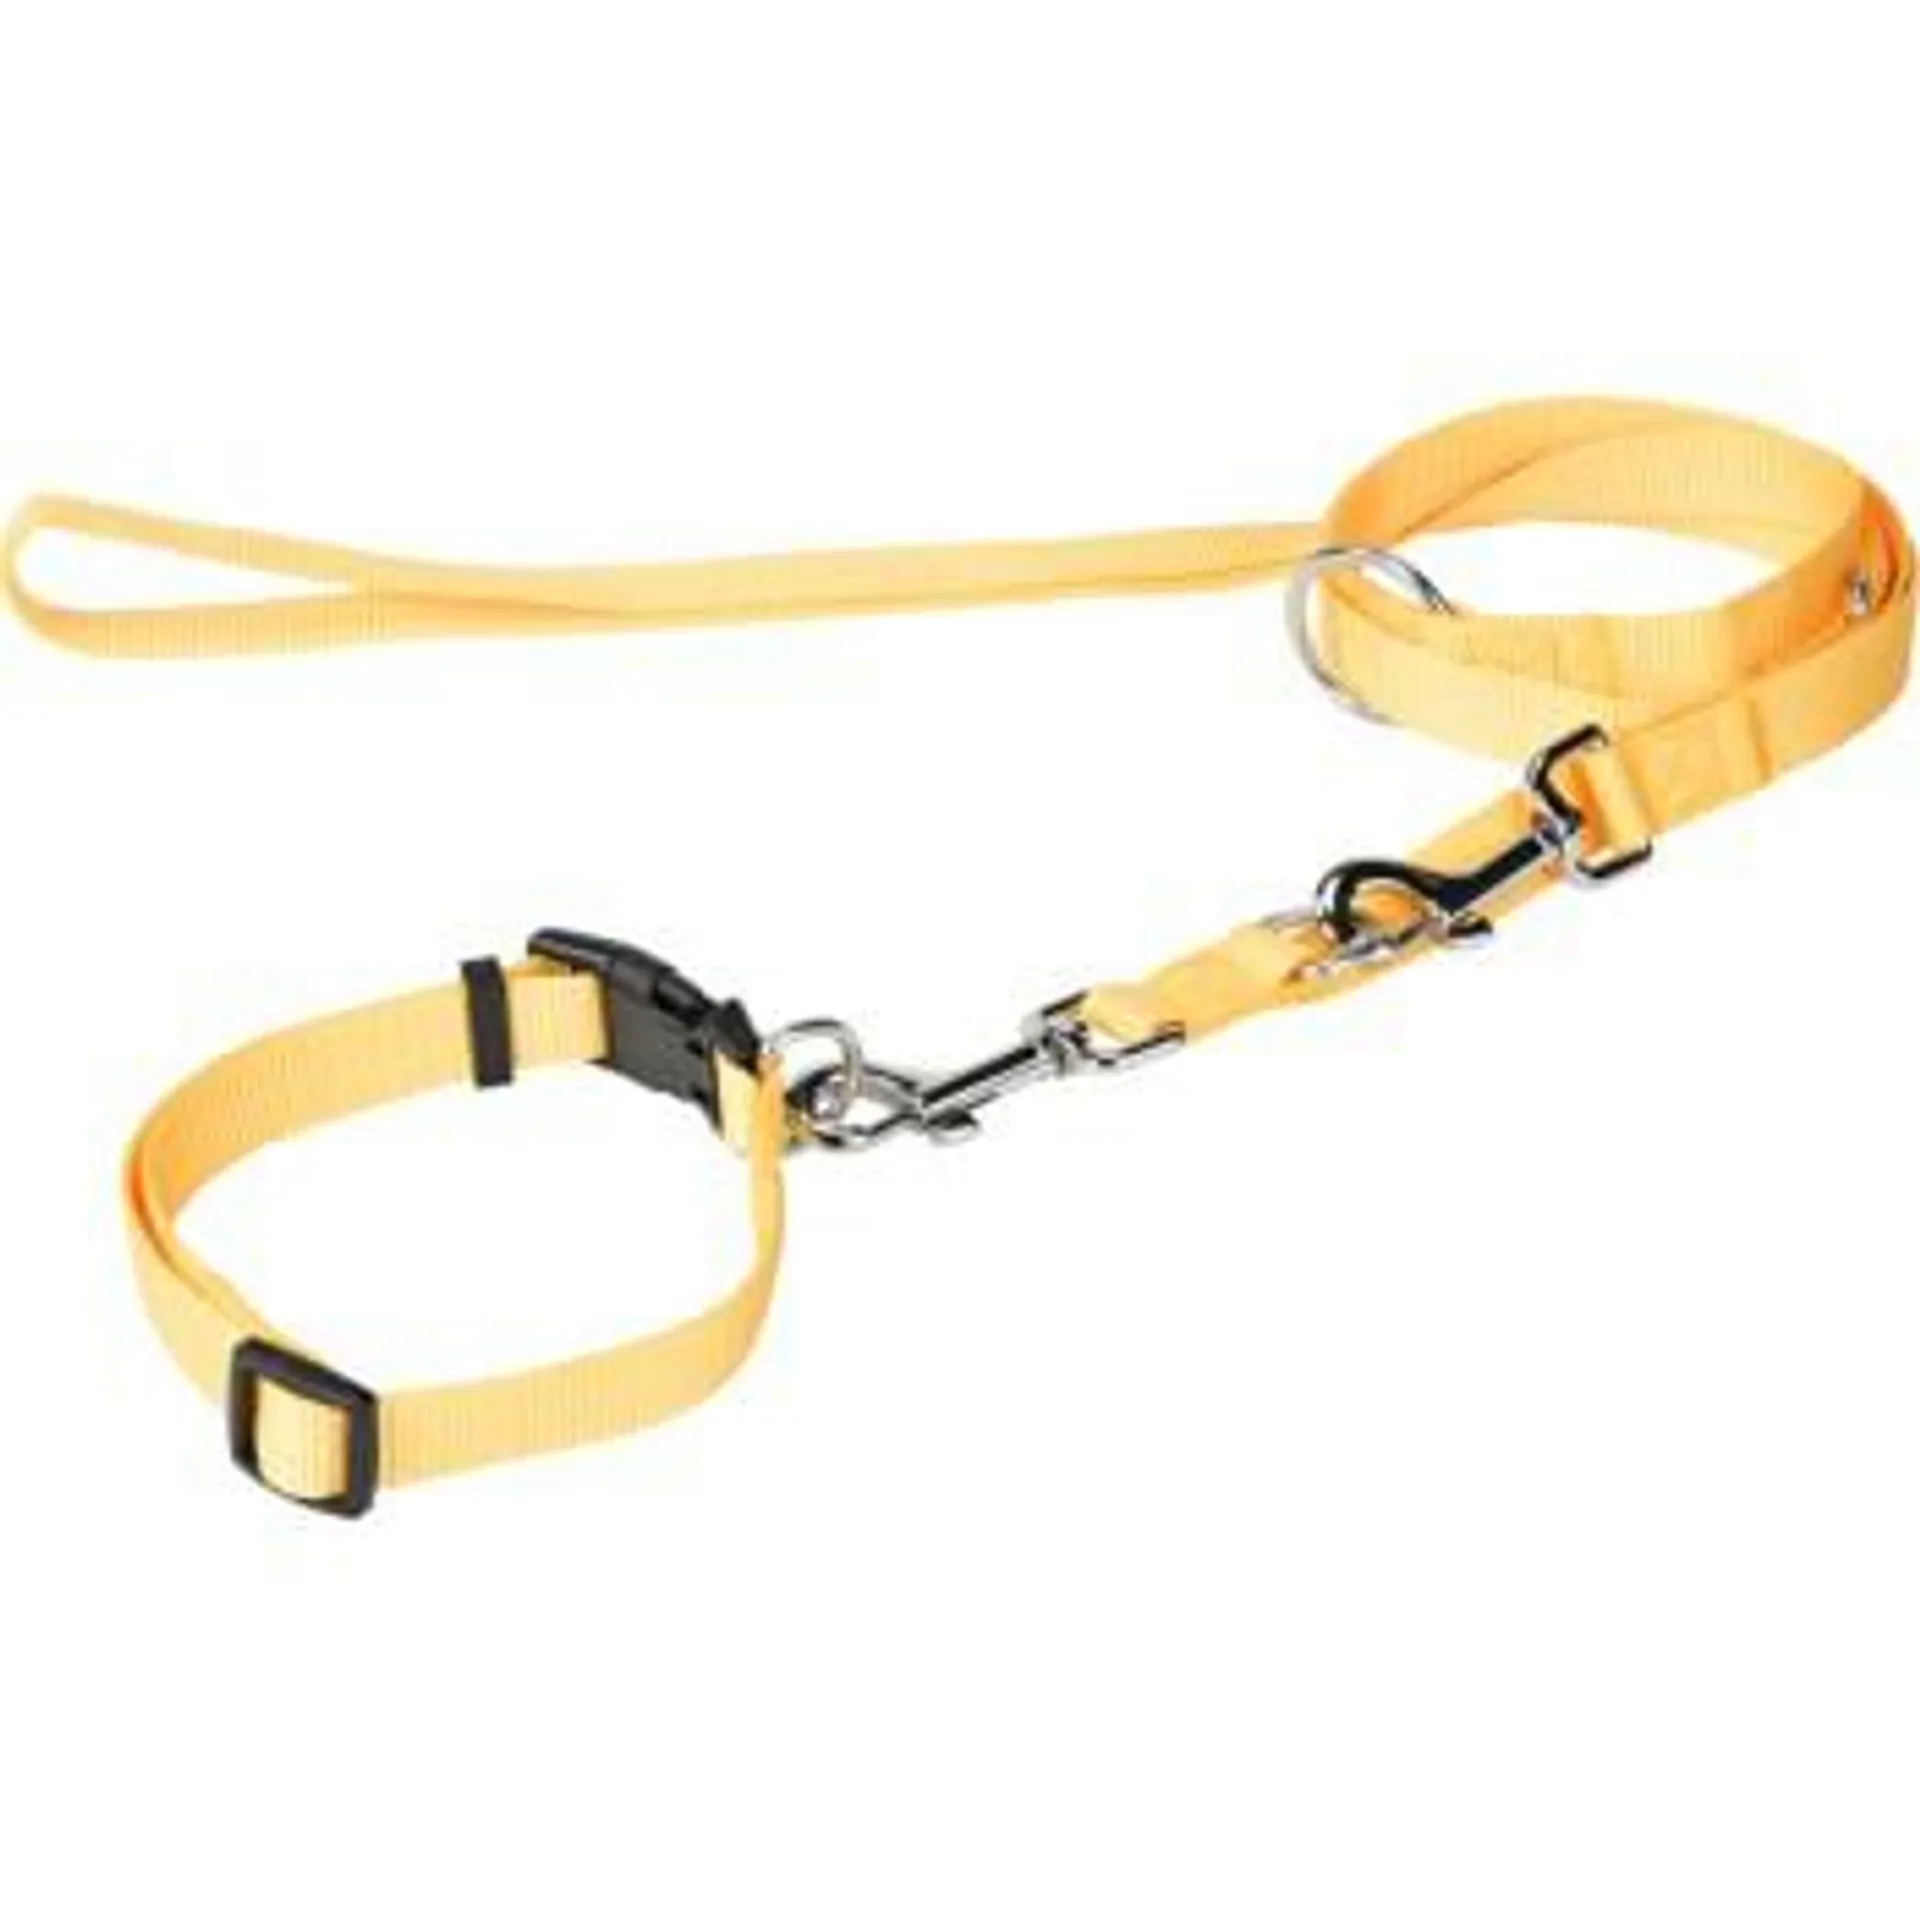 FIT+FUN collar + leash yellow L